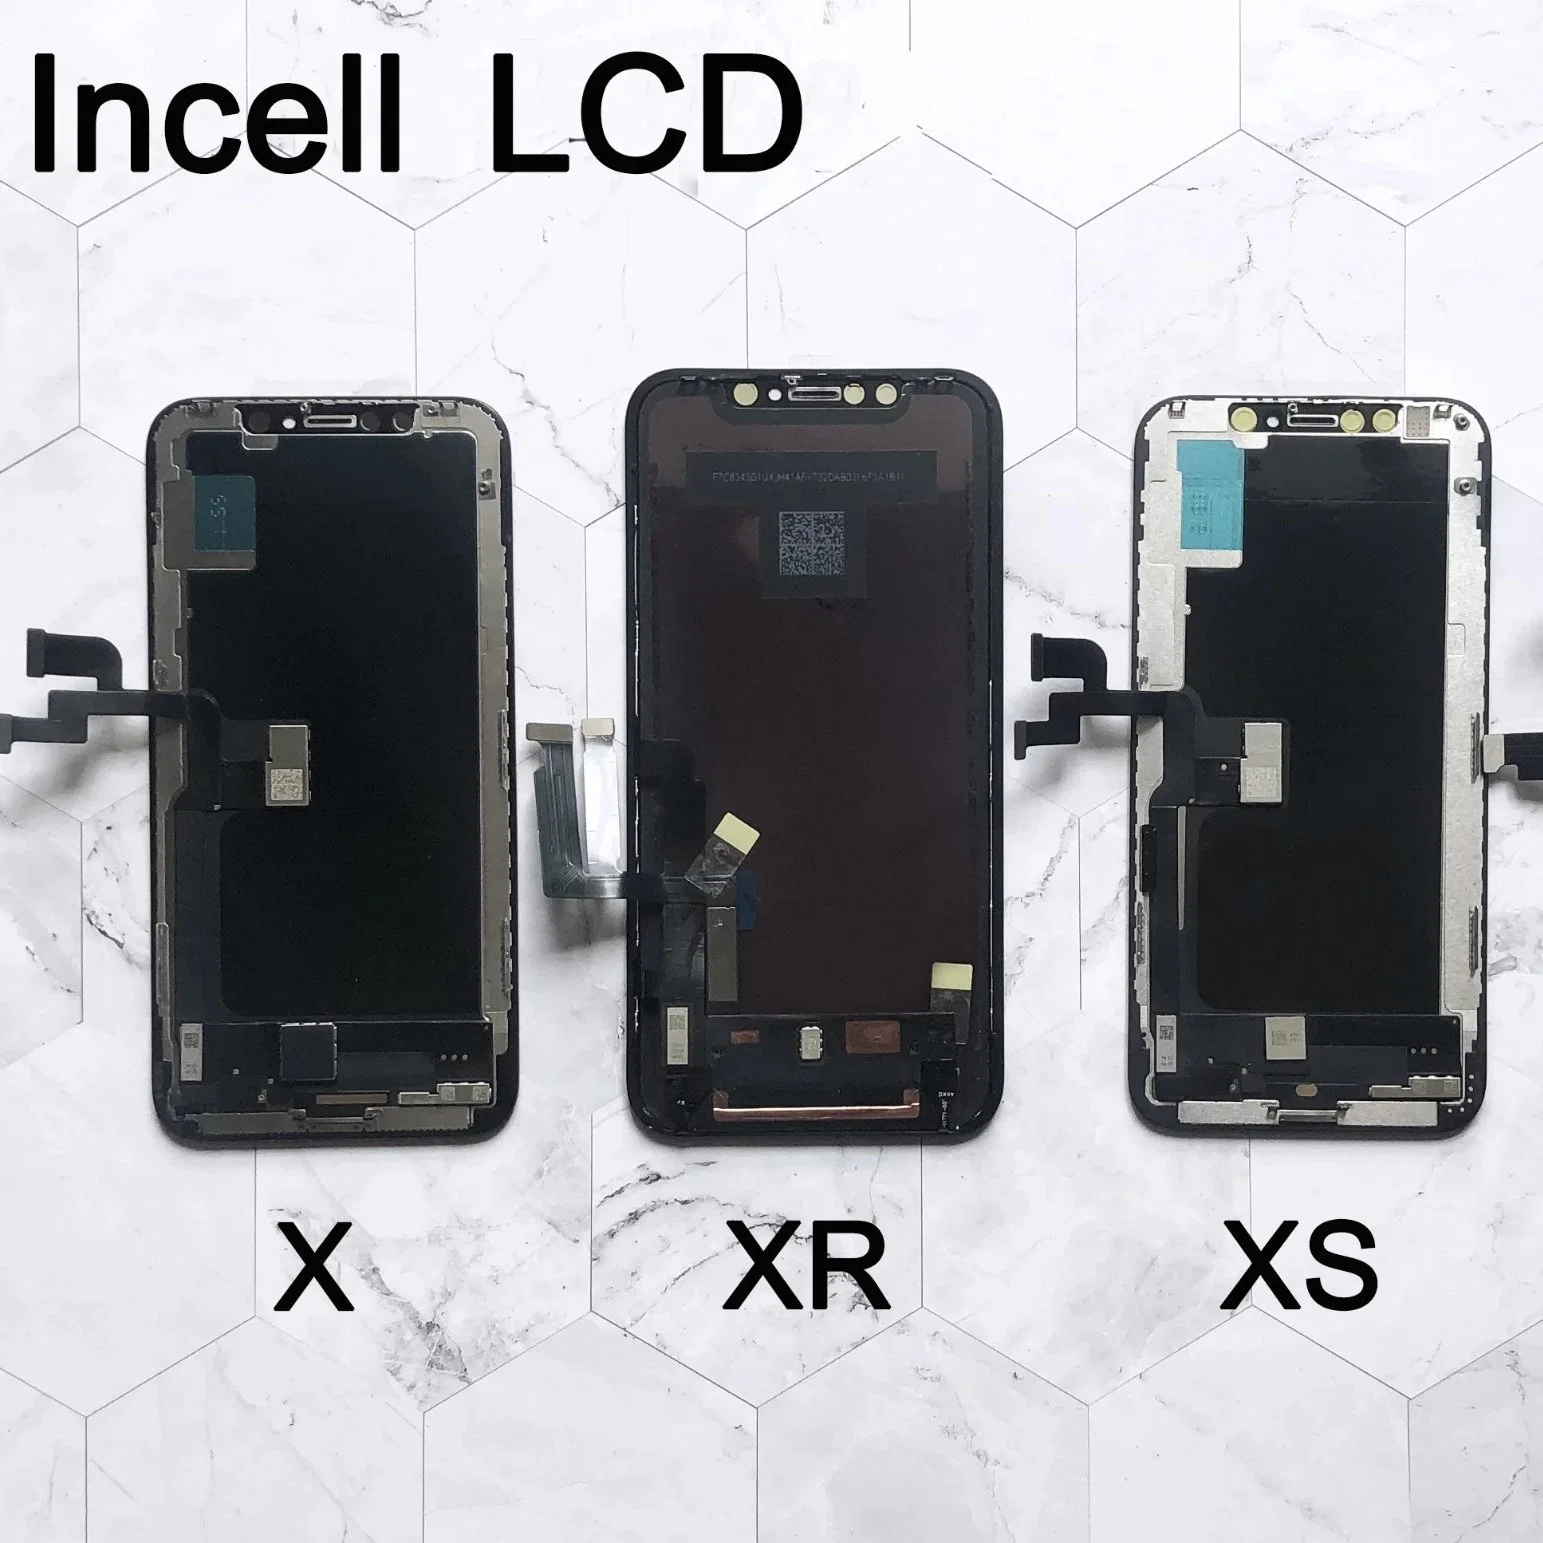 Нет14 Pantalla Incell OLED ЖК-дисплей для Iphonex Xs Max Xr ЖК-дисплей с сенсорным экраном для оцифровки iPhone 11 PRO Max